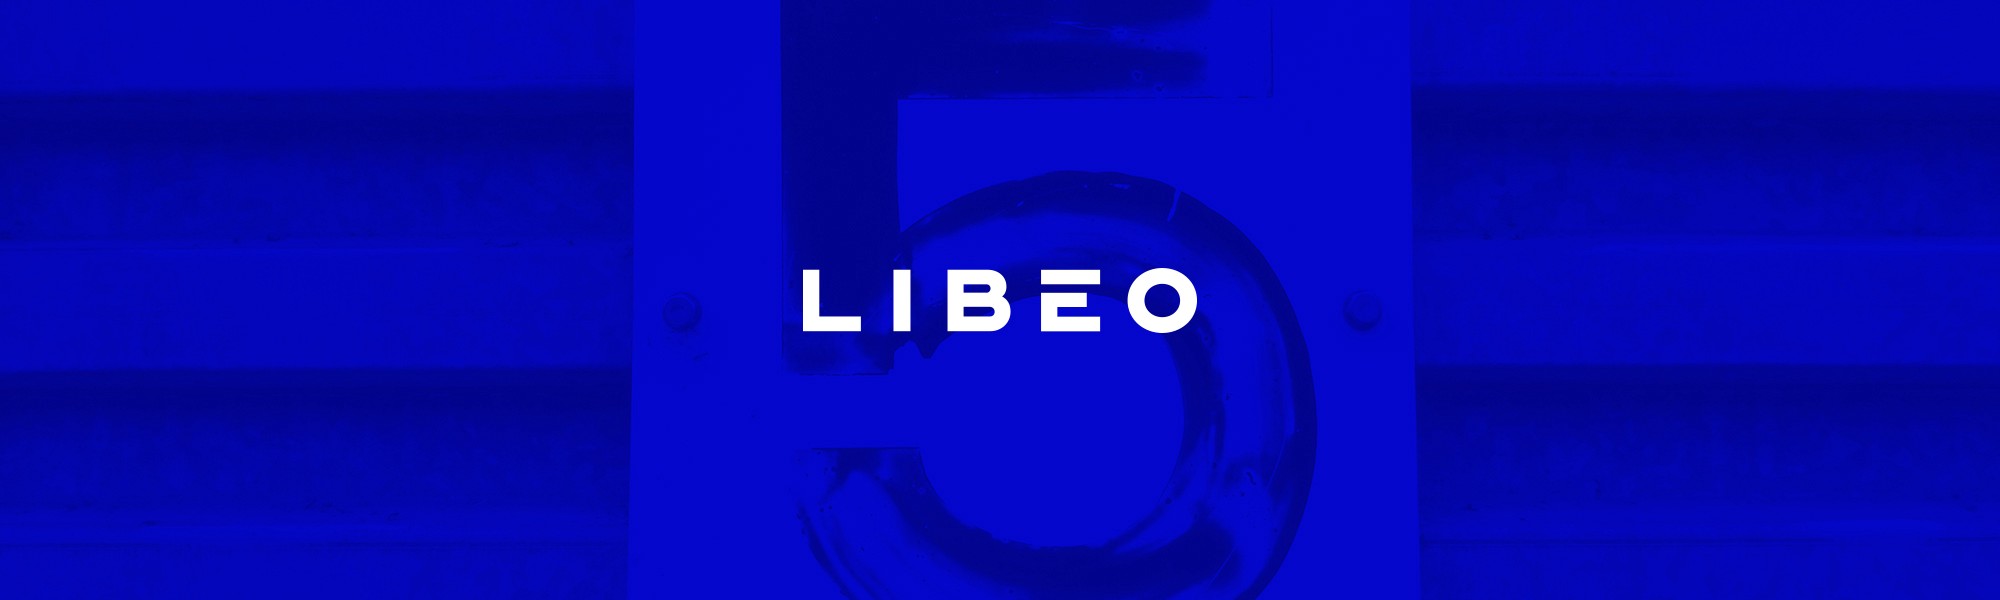 Logo de Libéo sur fond bleu foncé